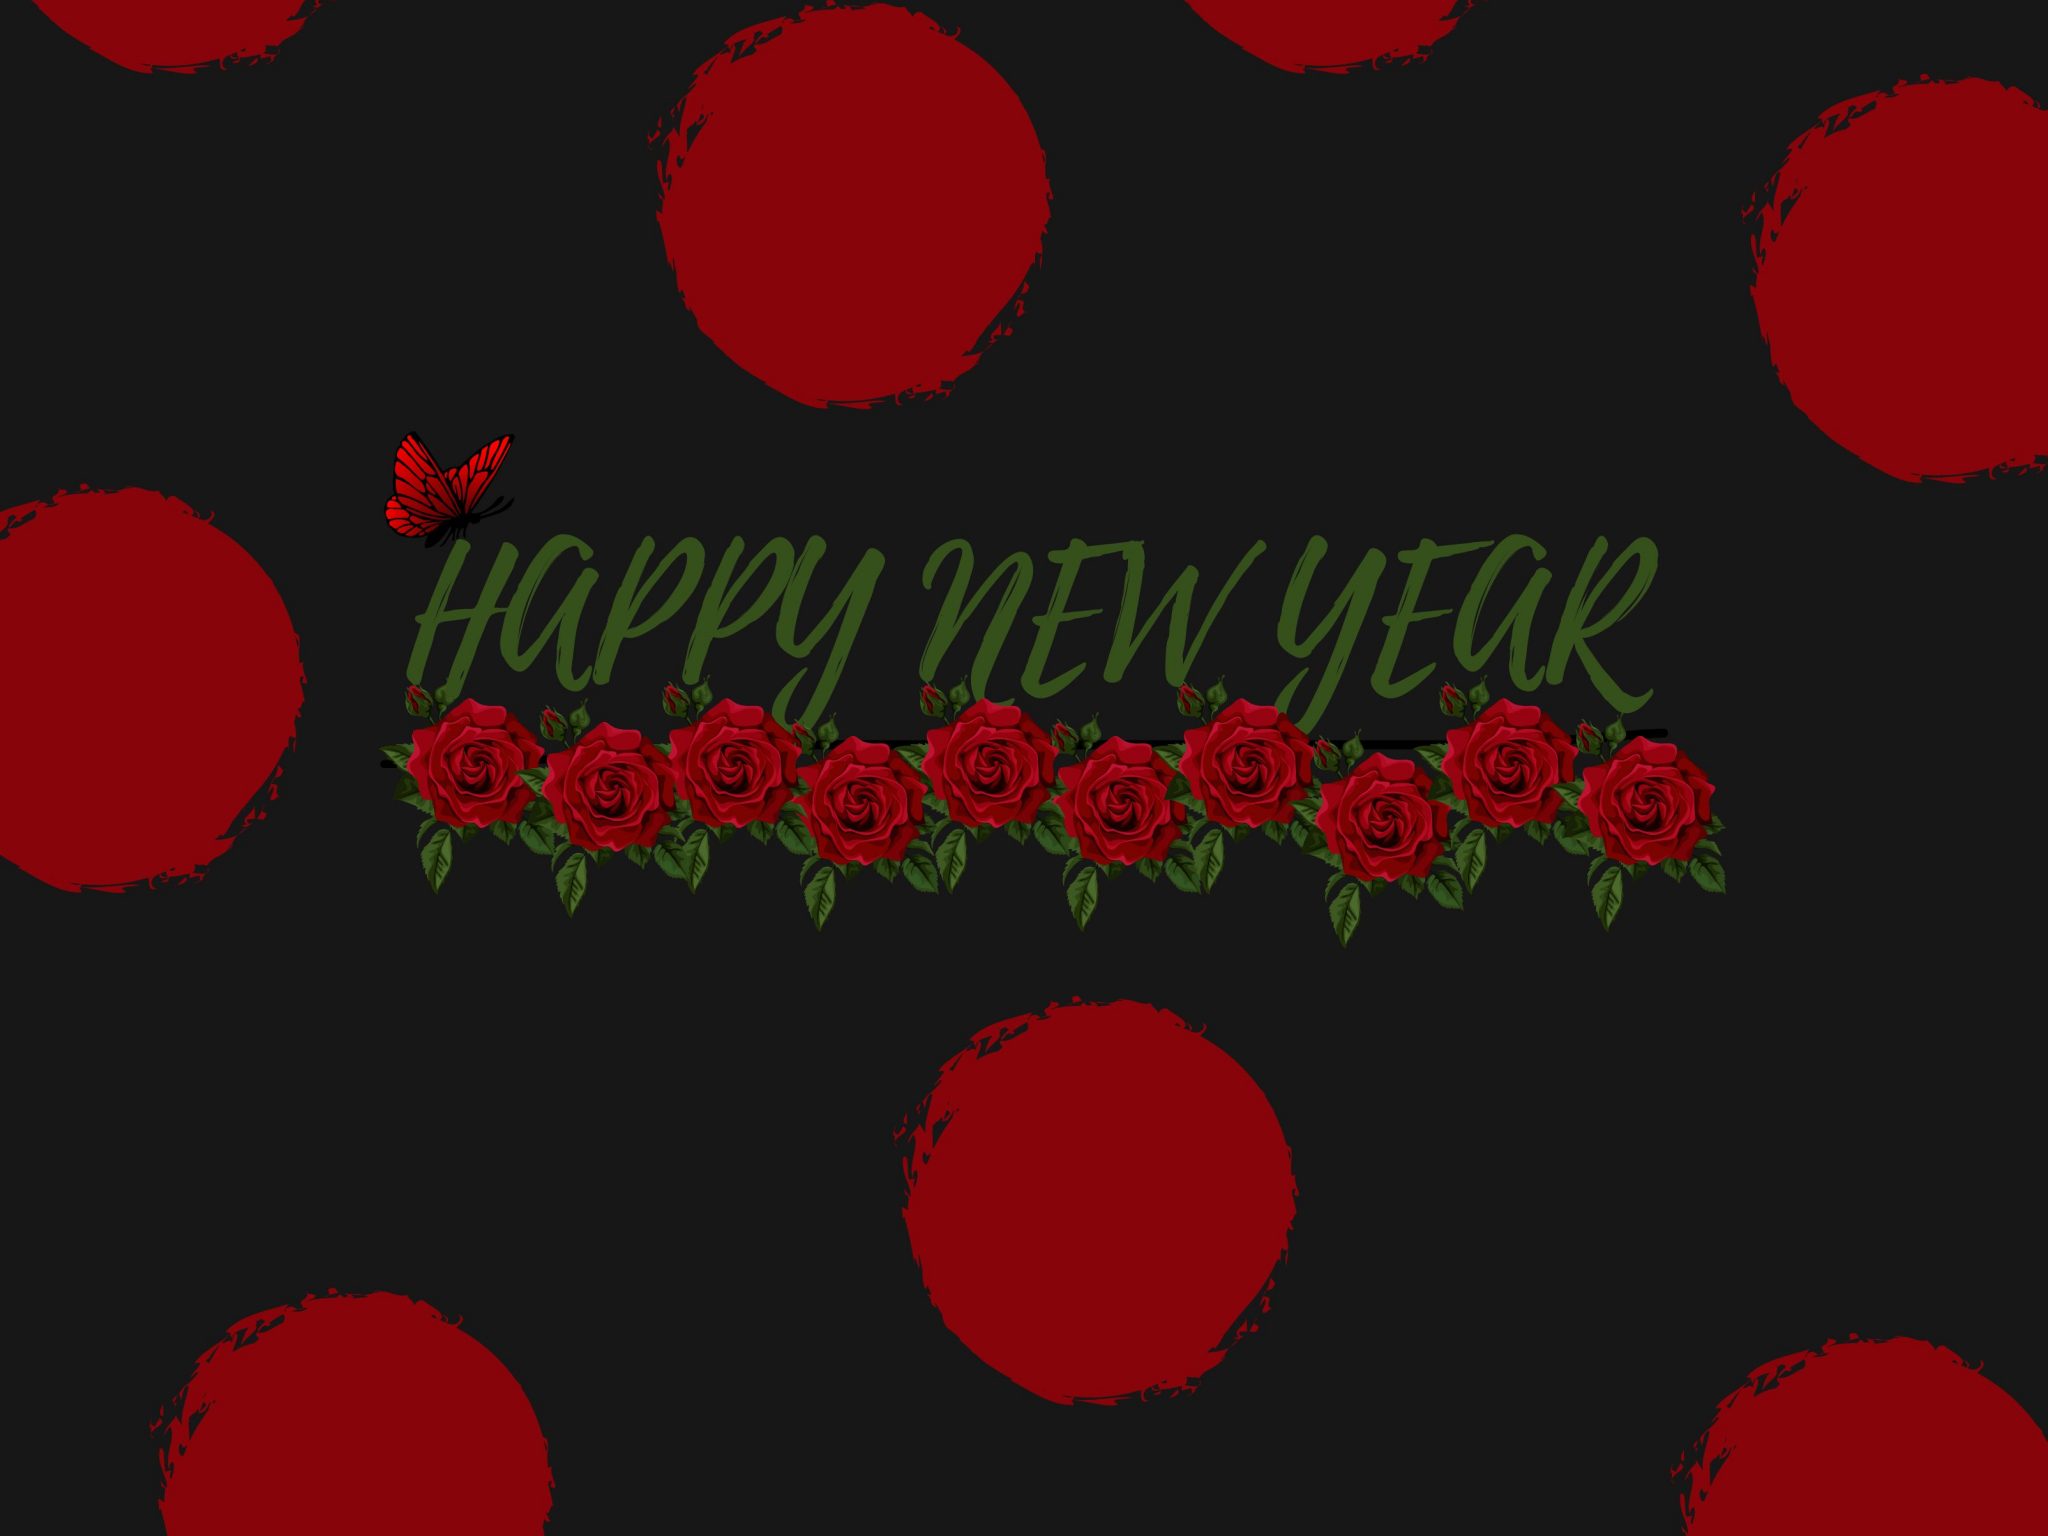 2048x1536 wallpaper Red Poka Dot New Year Ipad Wallpaper 2048x1536 pixels resolution